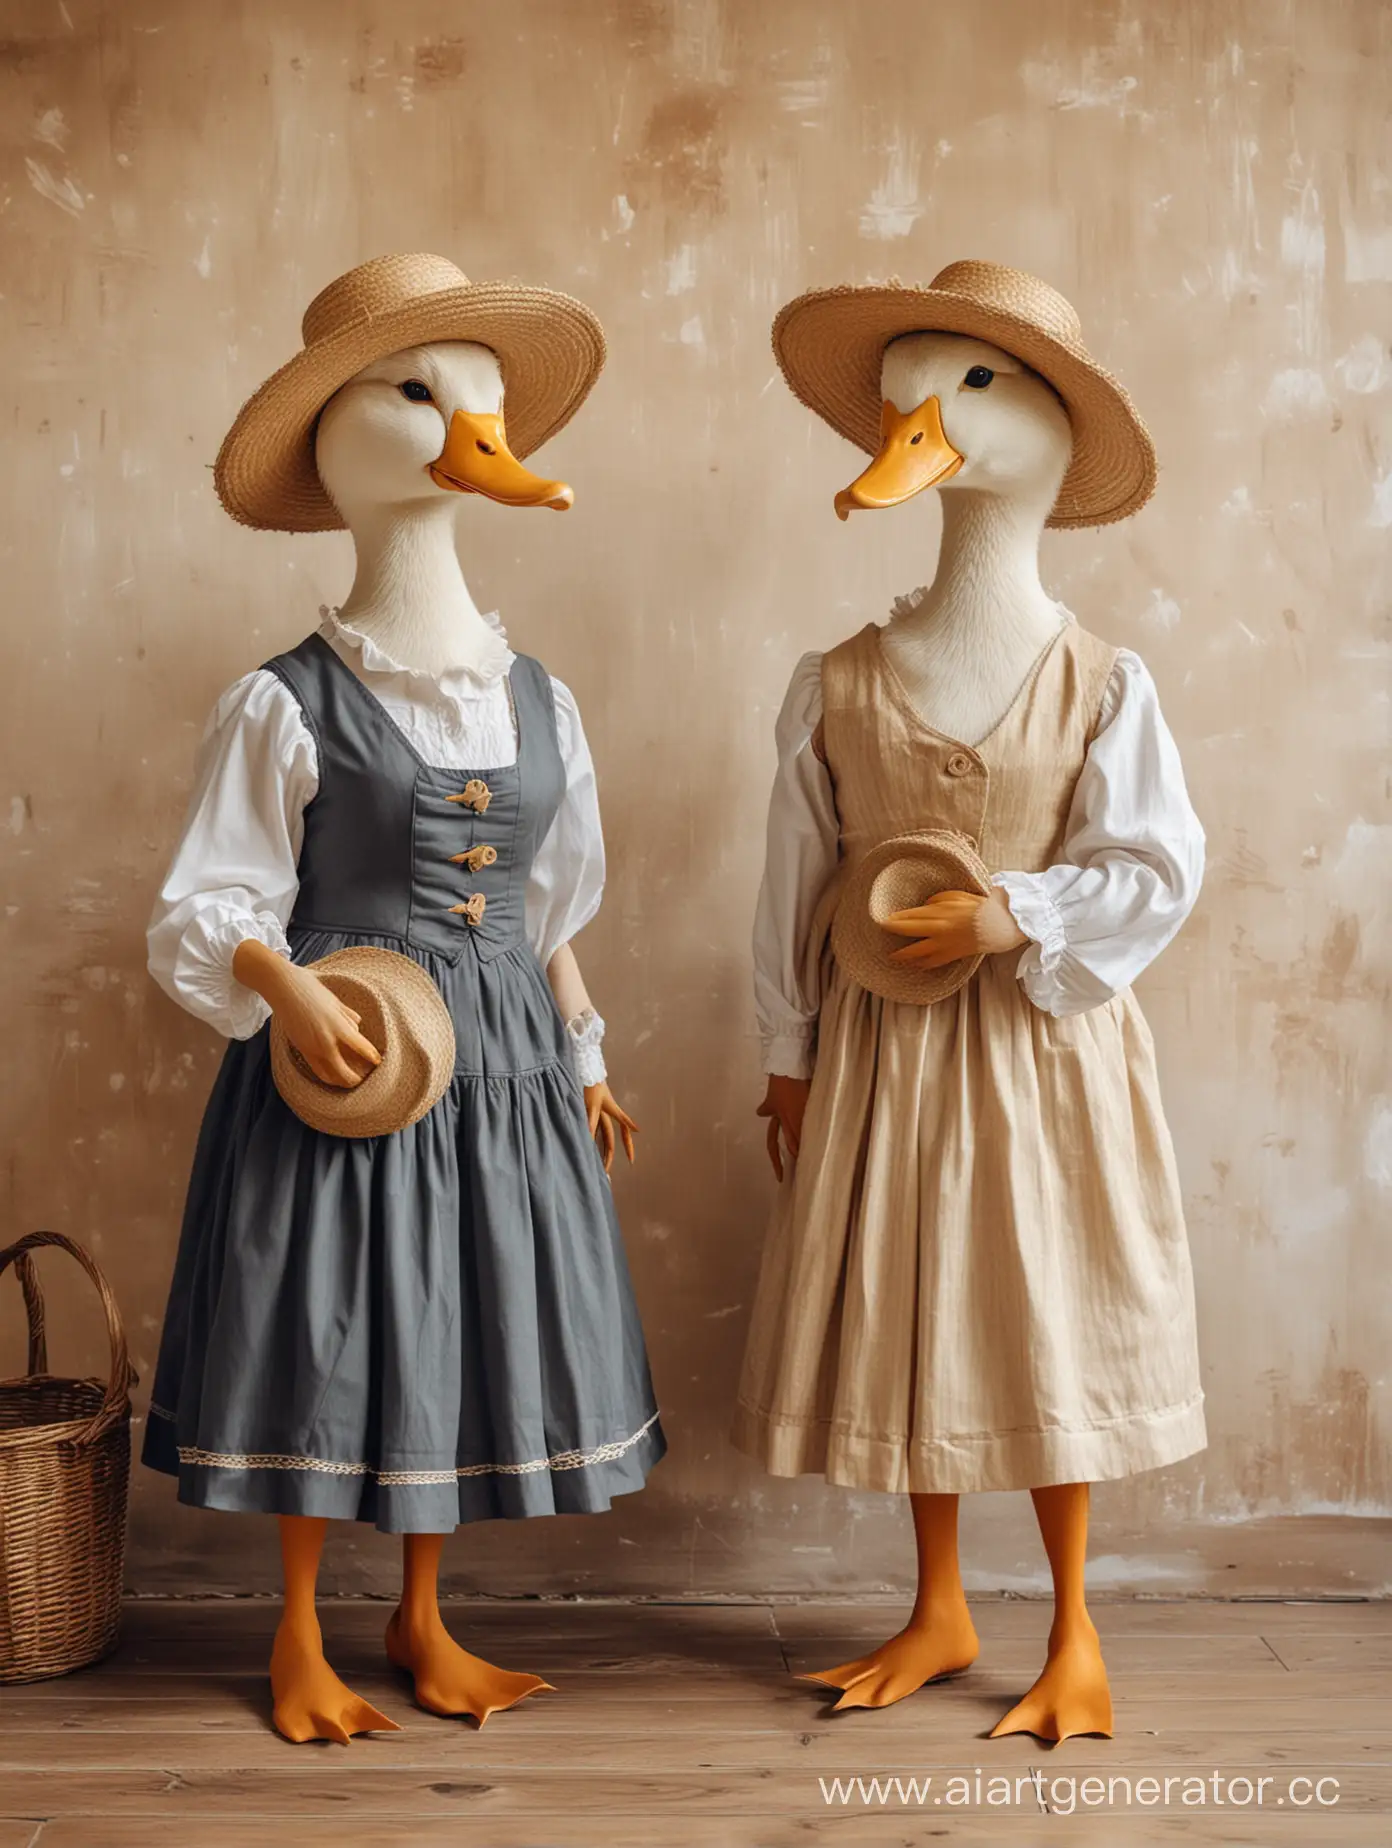 две утки в человеческой одежде, утки в платьях с соломенными шляпками , смотрят на картину, картина на заднем плане висит на стене